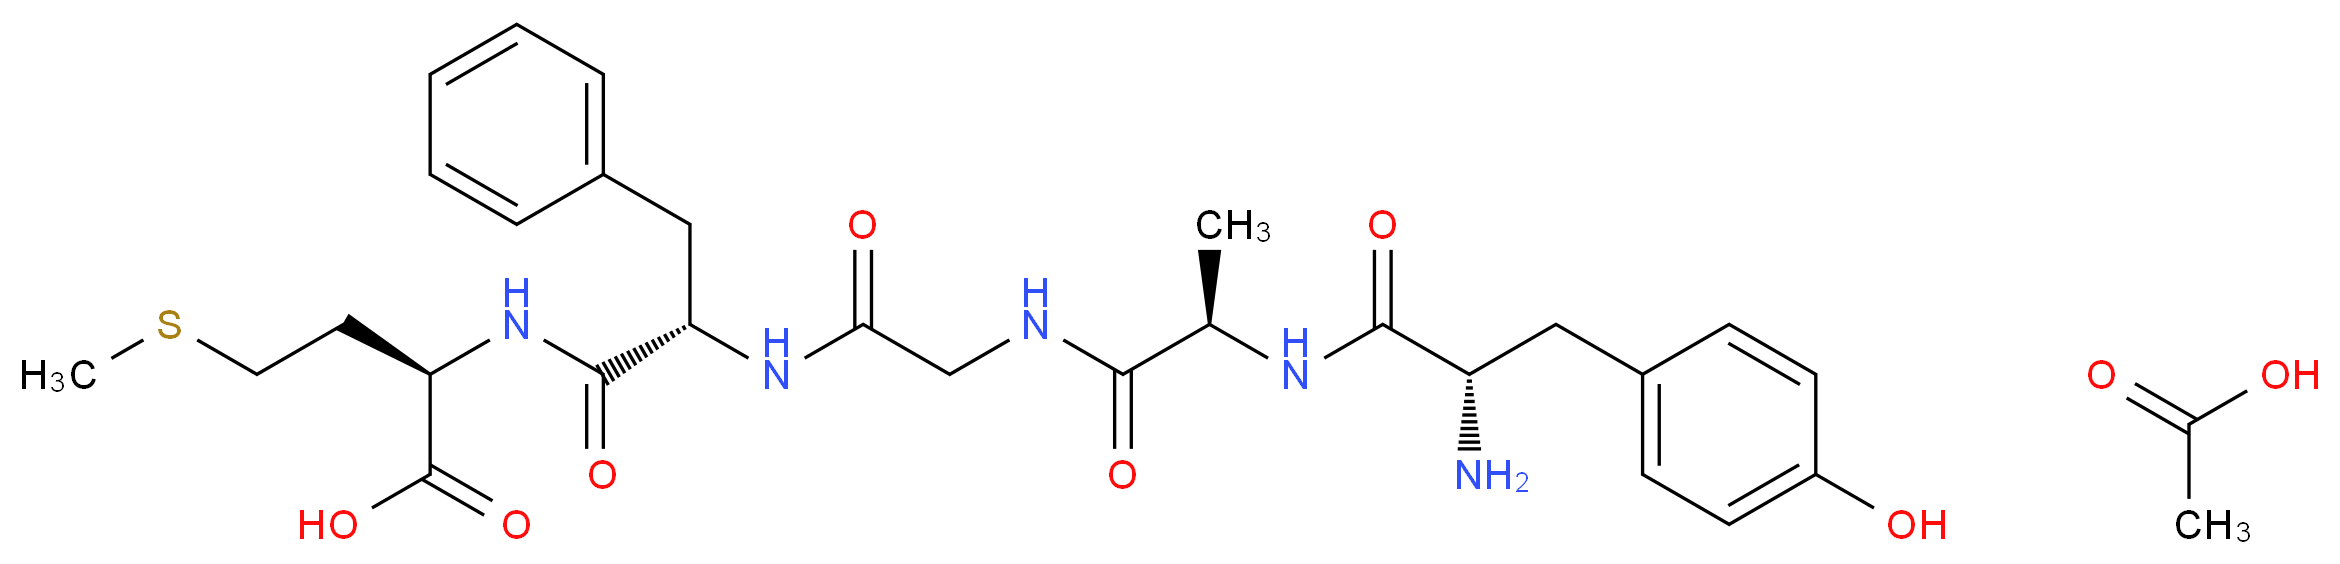 [D-Ala2, D-Met5]-Enkephalin acetate salt_Molecular_structure_CAS_100929-58-6)